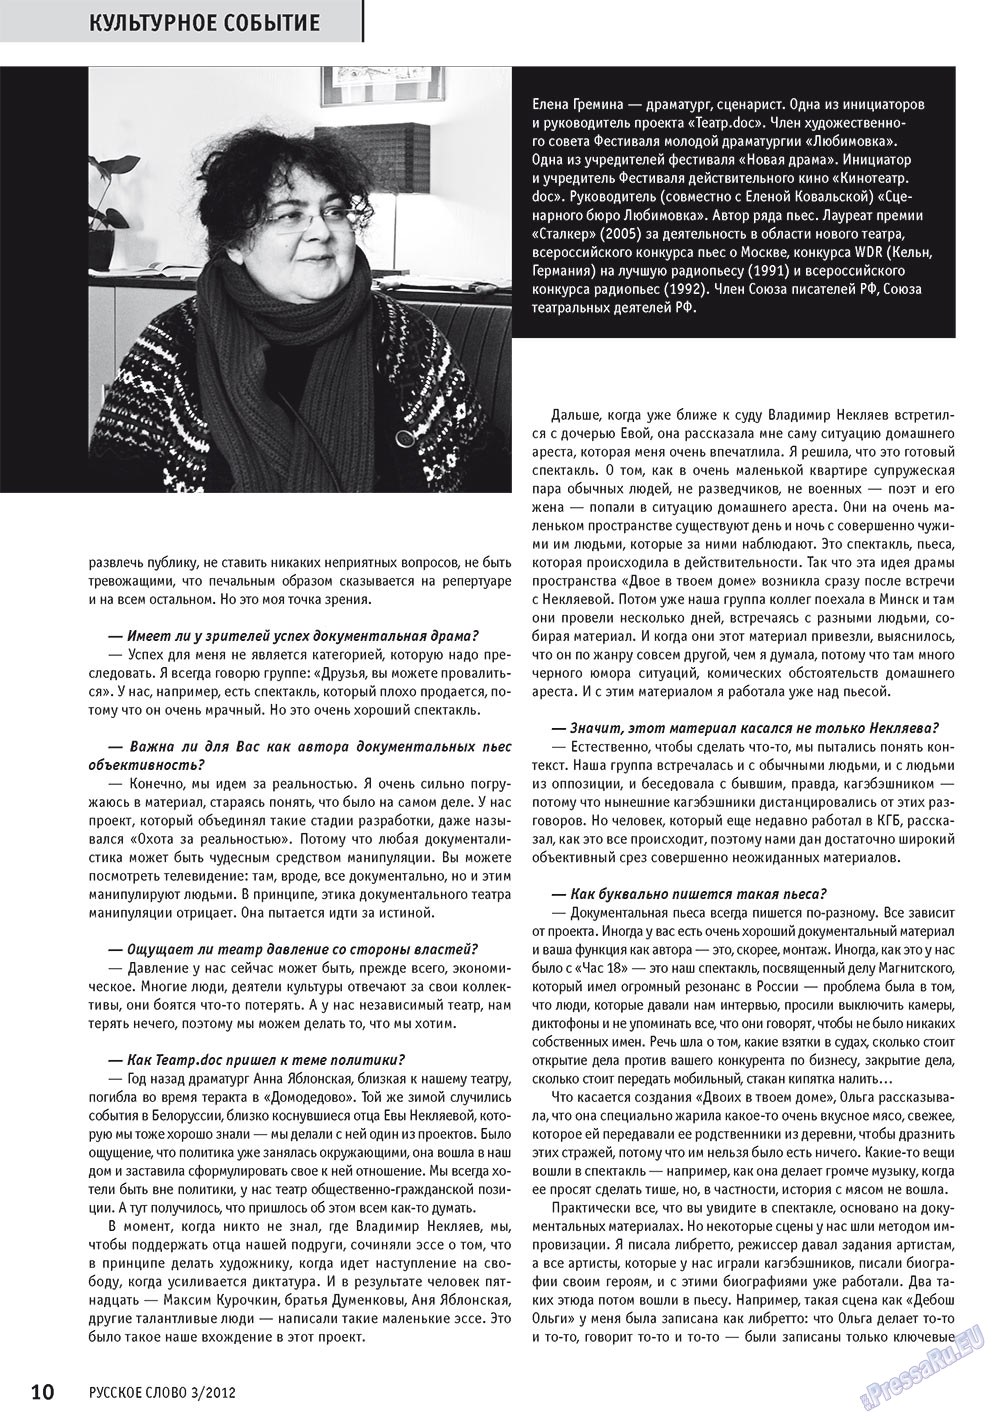 Русское слово, журнал. 2012 №3 стр.11